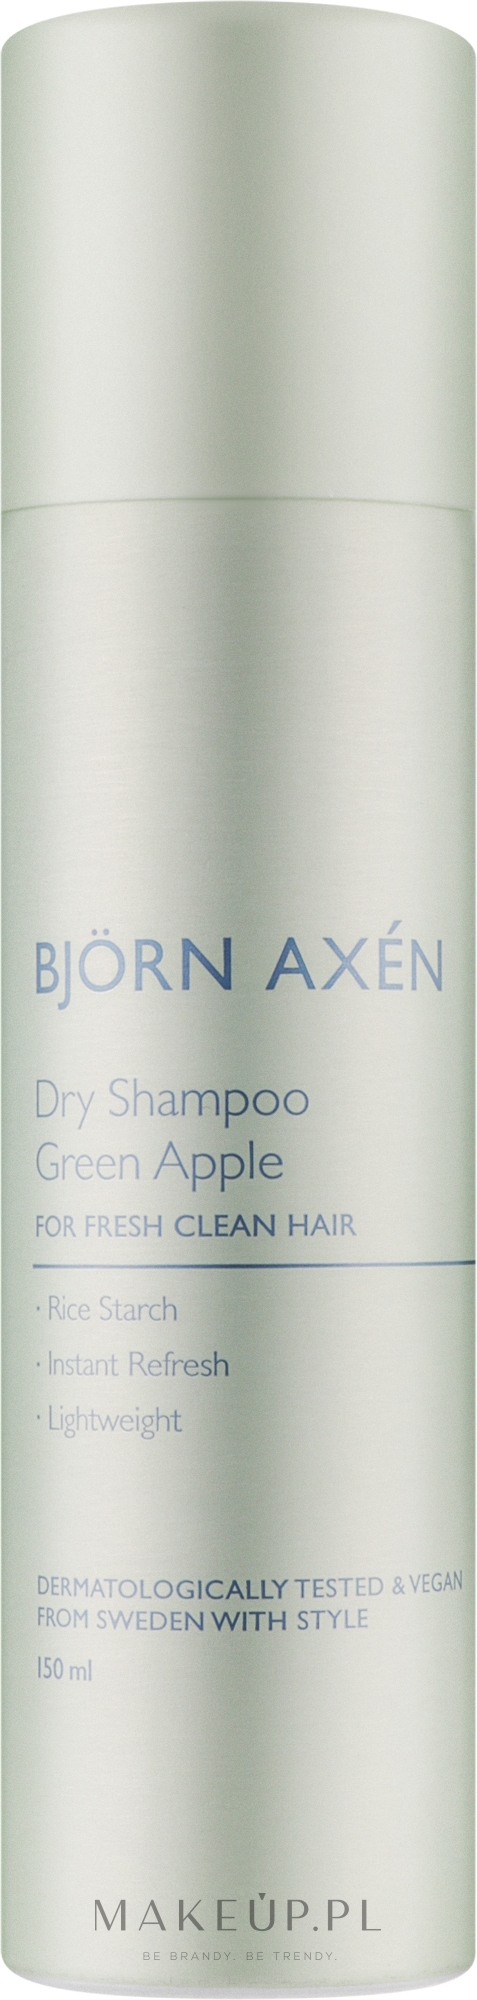 Suchy szampon o zapachu zielonego jabłka - BjOrn AxEn Dry Shampoo Green Apple — Zdjęcie 150 ml